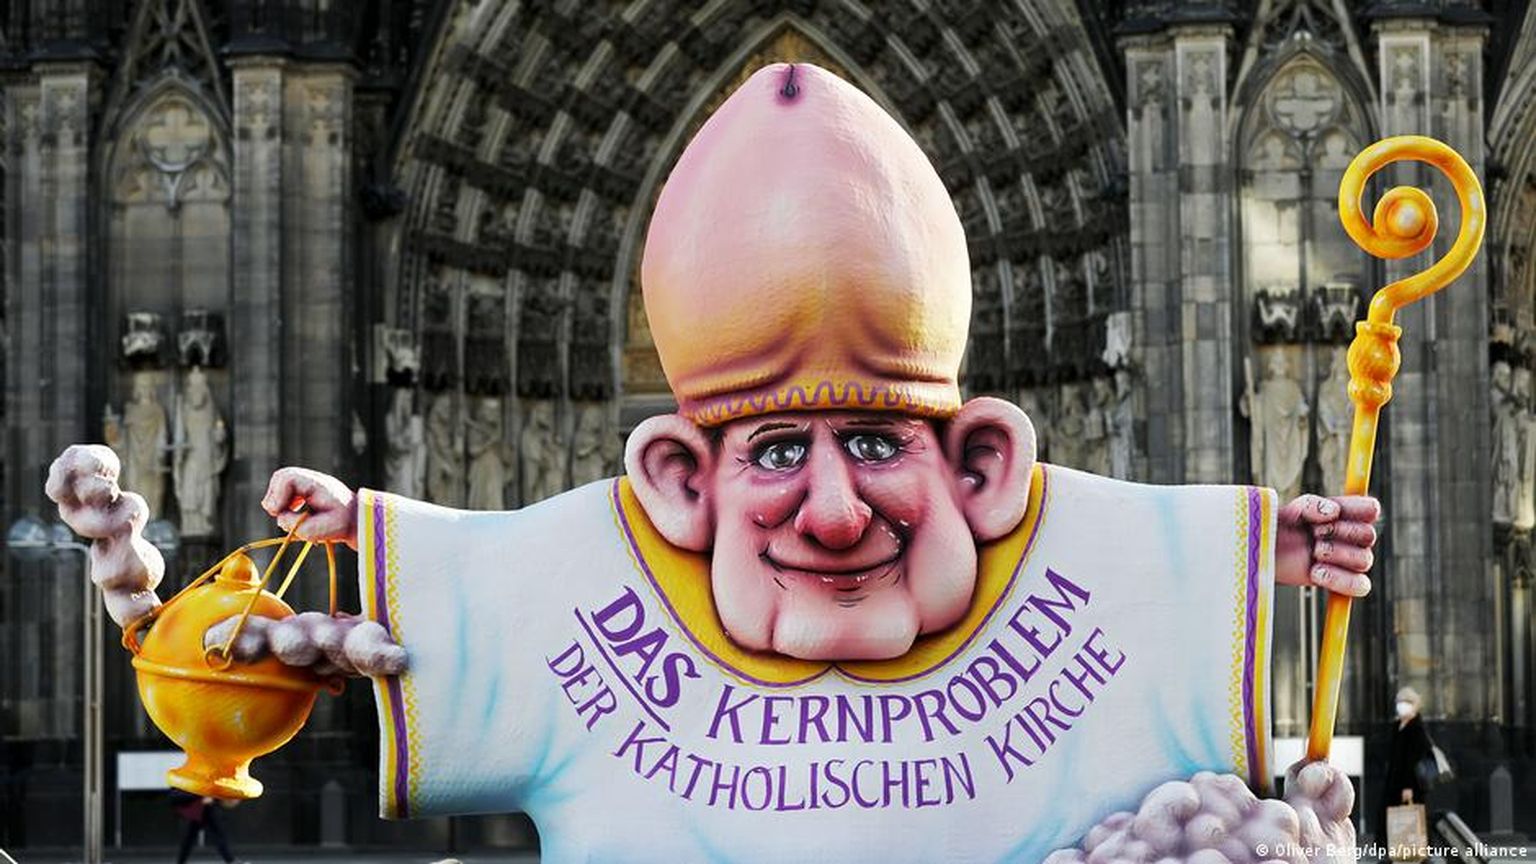 Это изображение епископа перед Кельнским собором стало реакцией на скандал с сокрытиями случаев сексуального насилия в архиепархии. Надпись на сутане: "Ключевая проблема католической церкви"